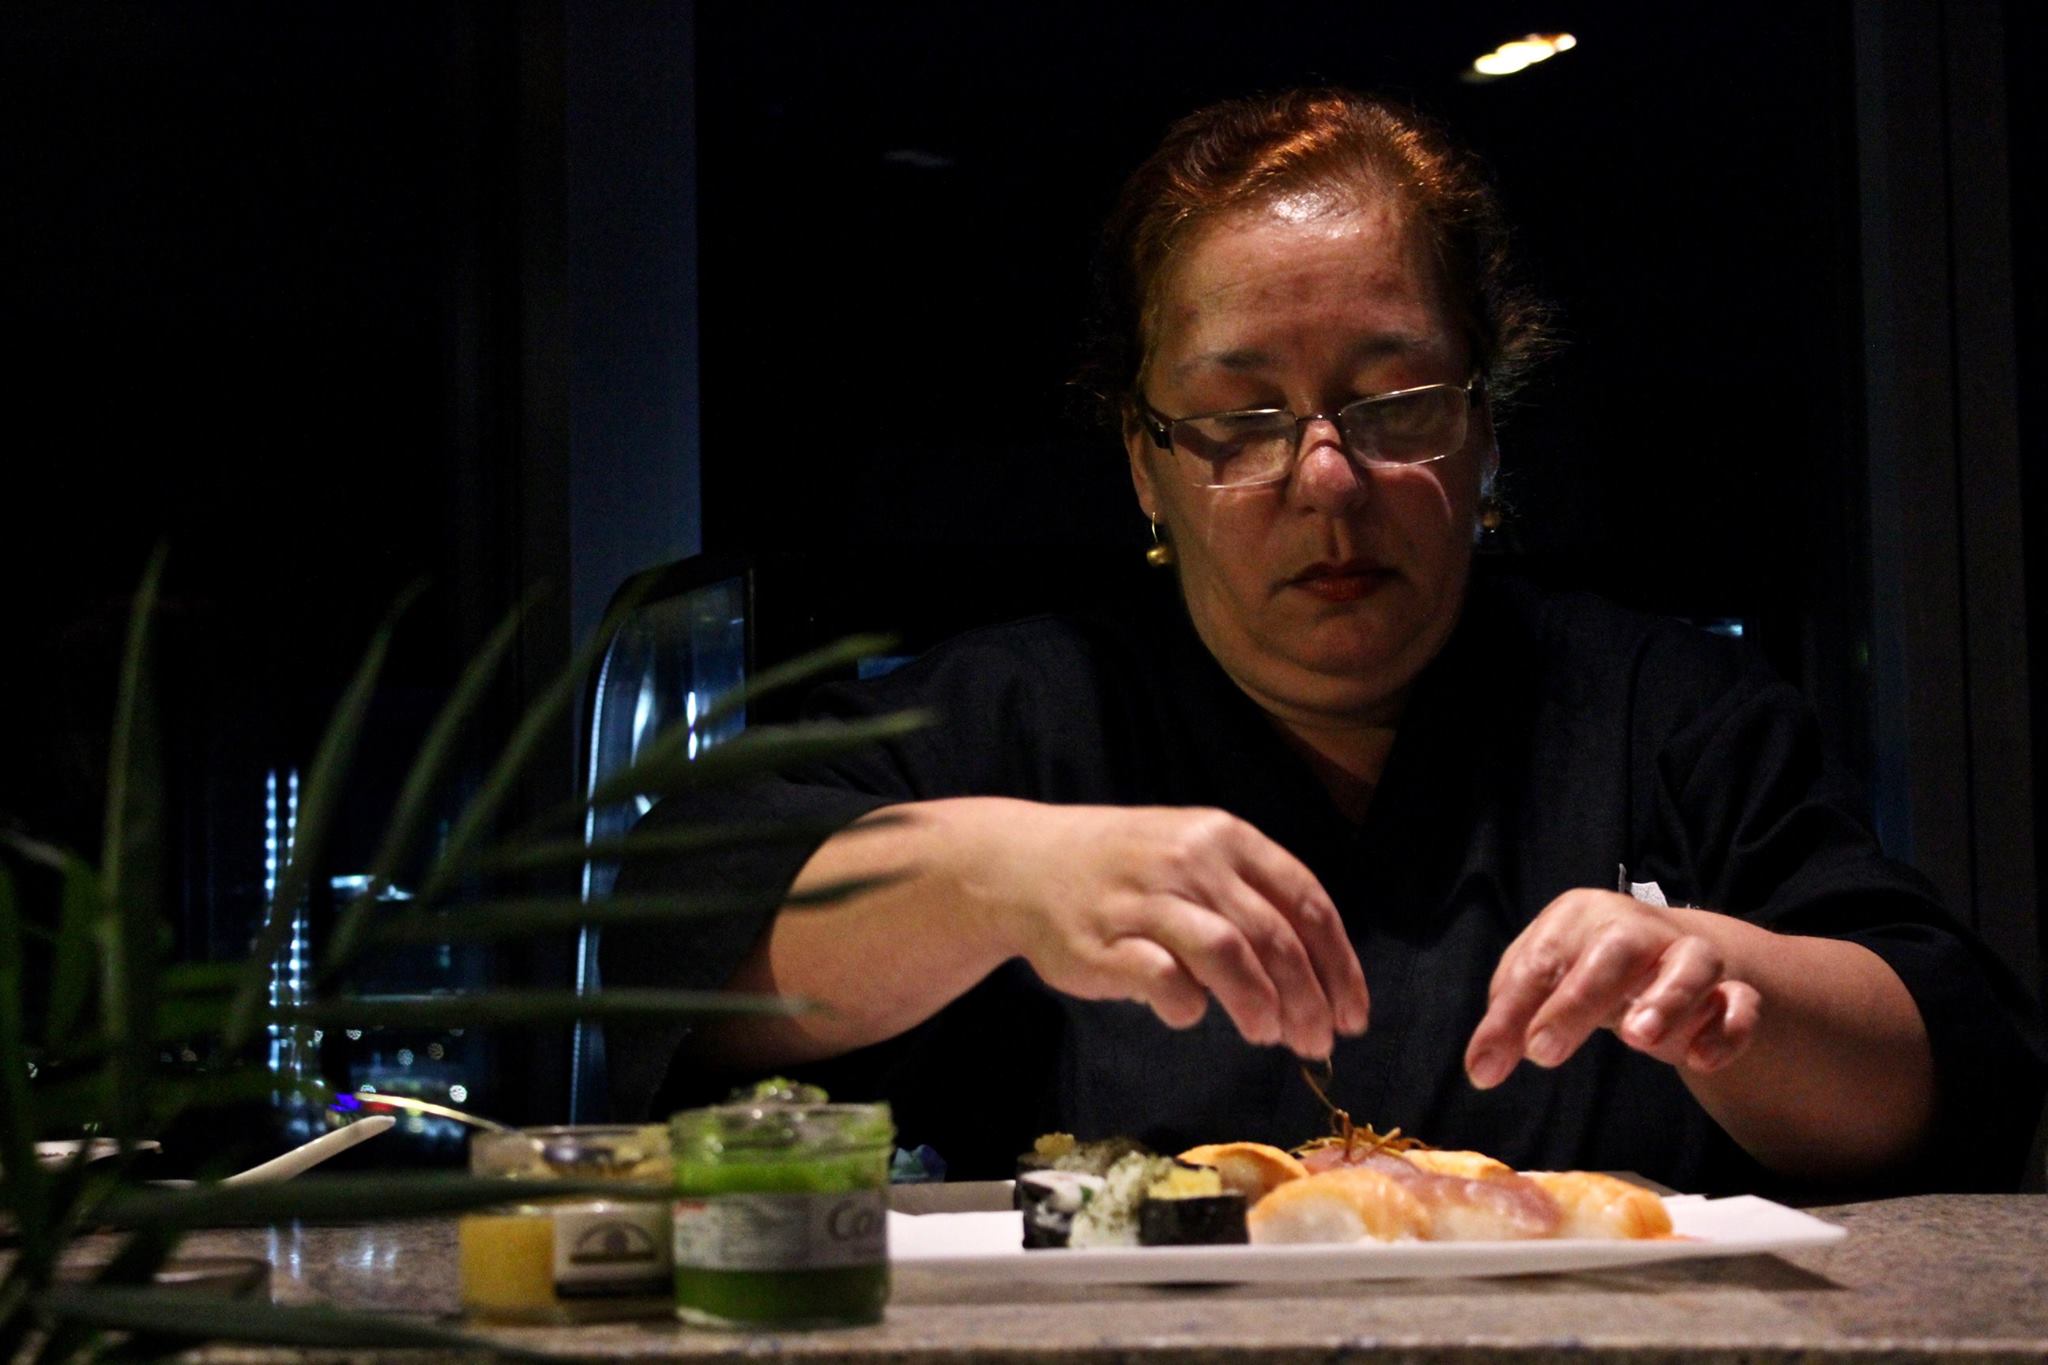 Plateaux sushi nagoya(42psc)